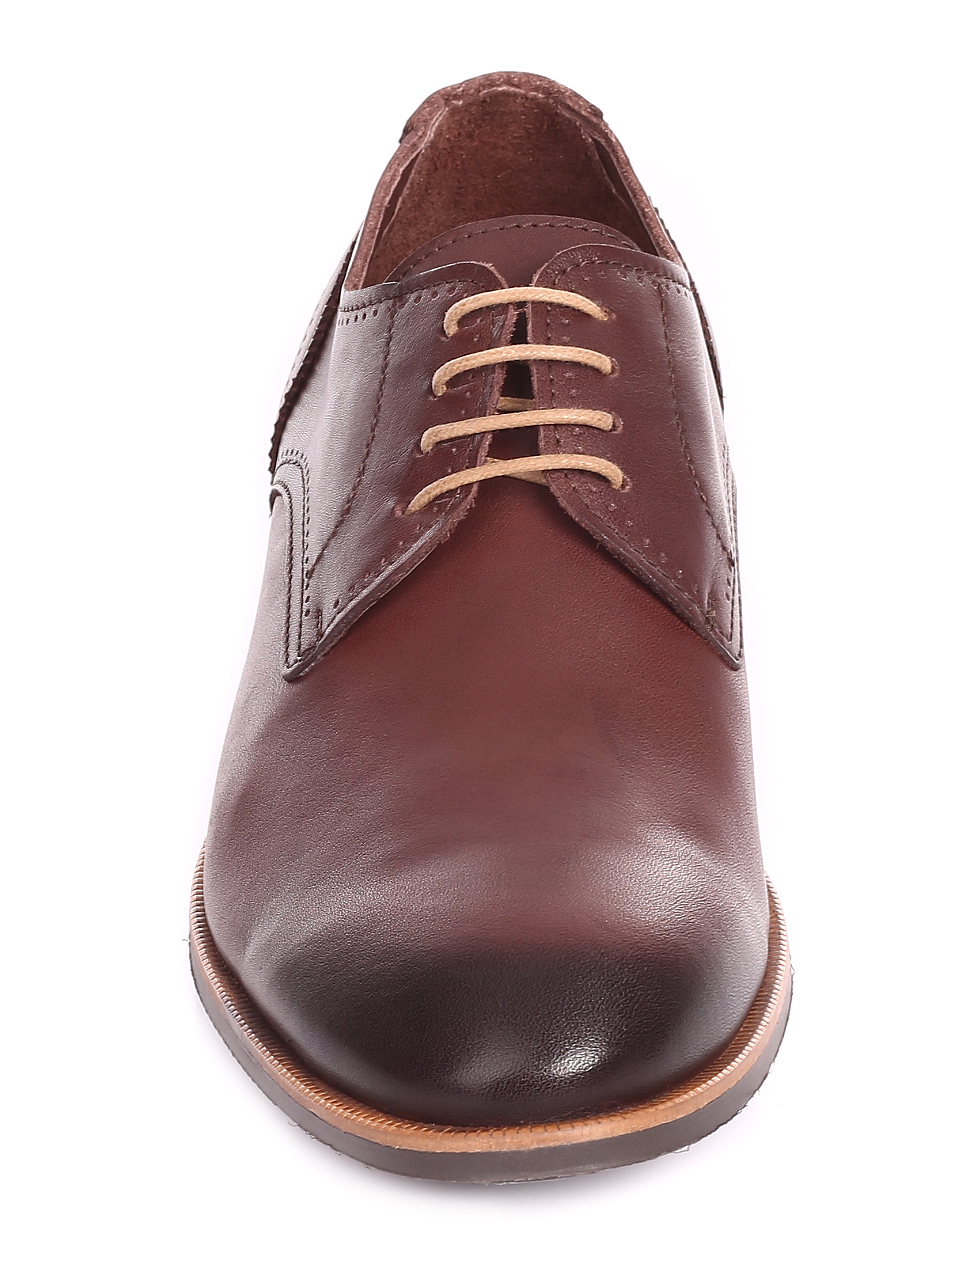 Елегантни мъжки обувки от естествена кожа 7AT-20478 brown